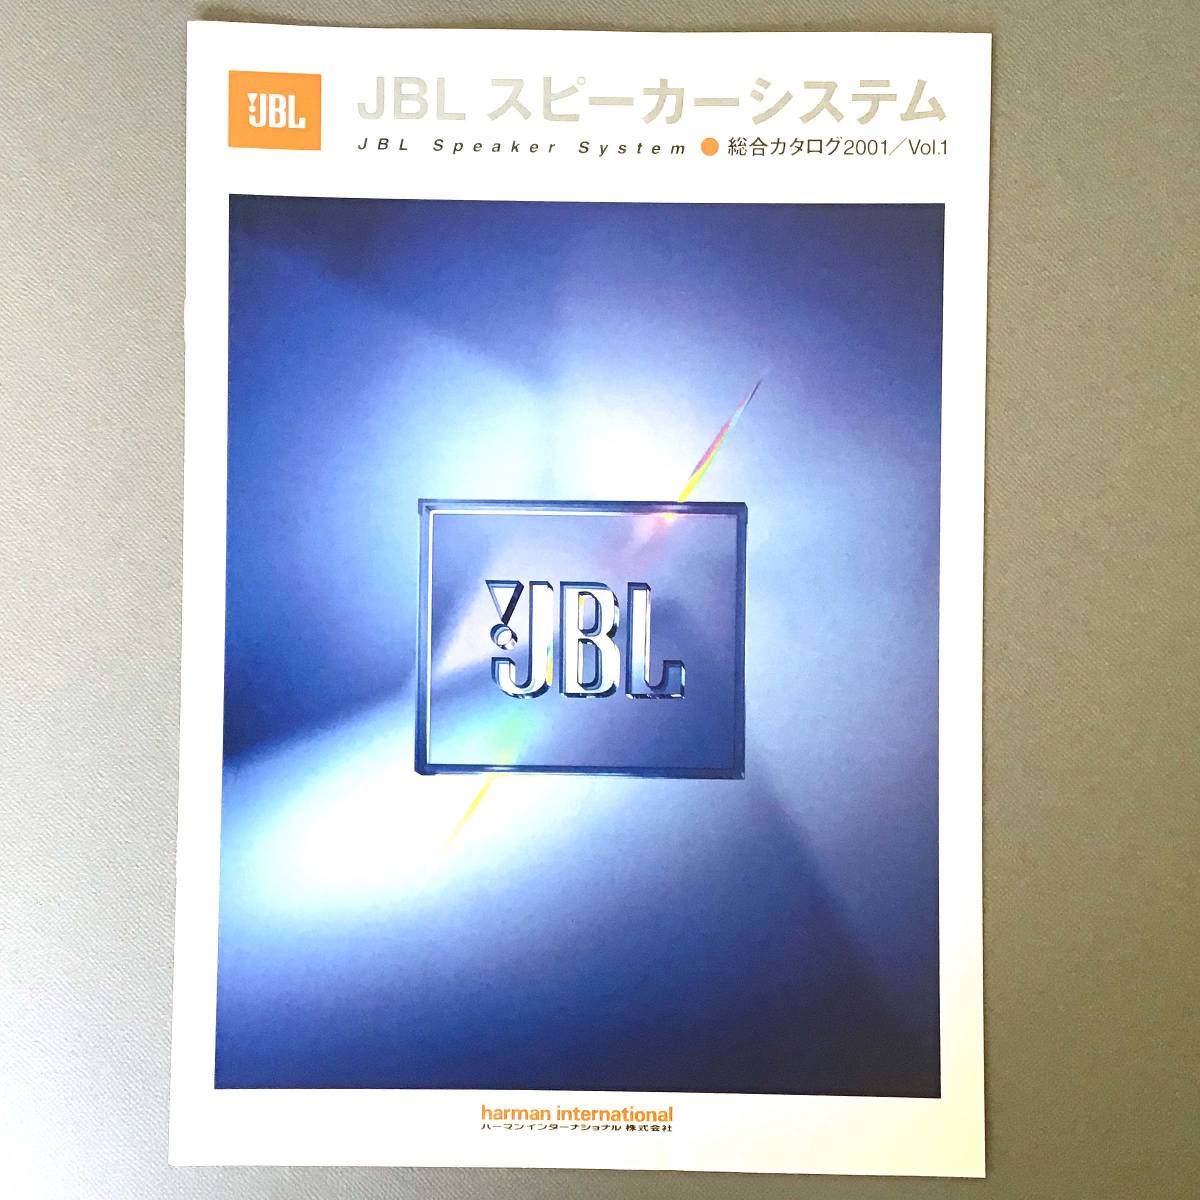 CL【カタログ】JBL スピーカーシステム 総合カタログ2001/Vol.1 ハーマンインターナショナル harman international_画像1